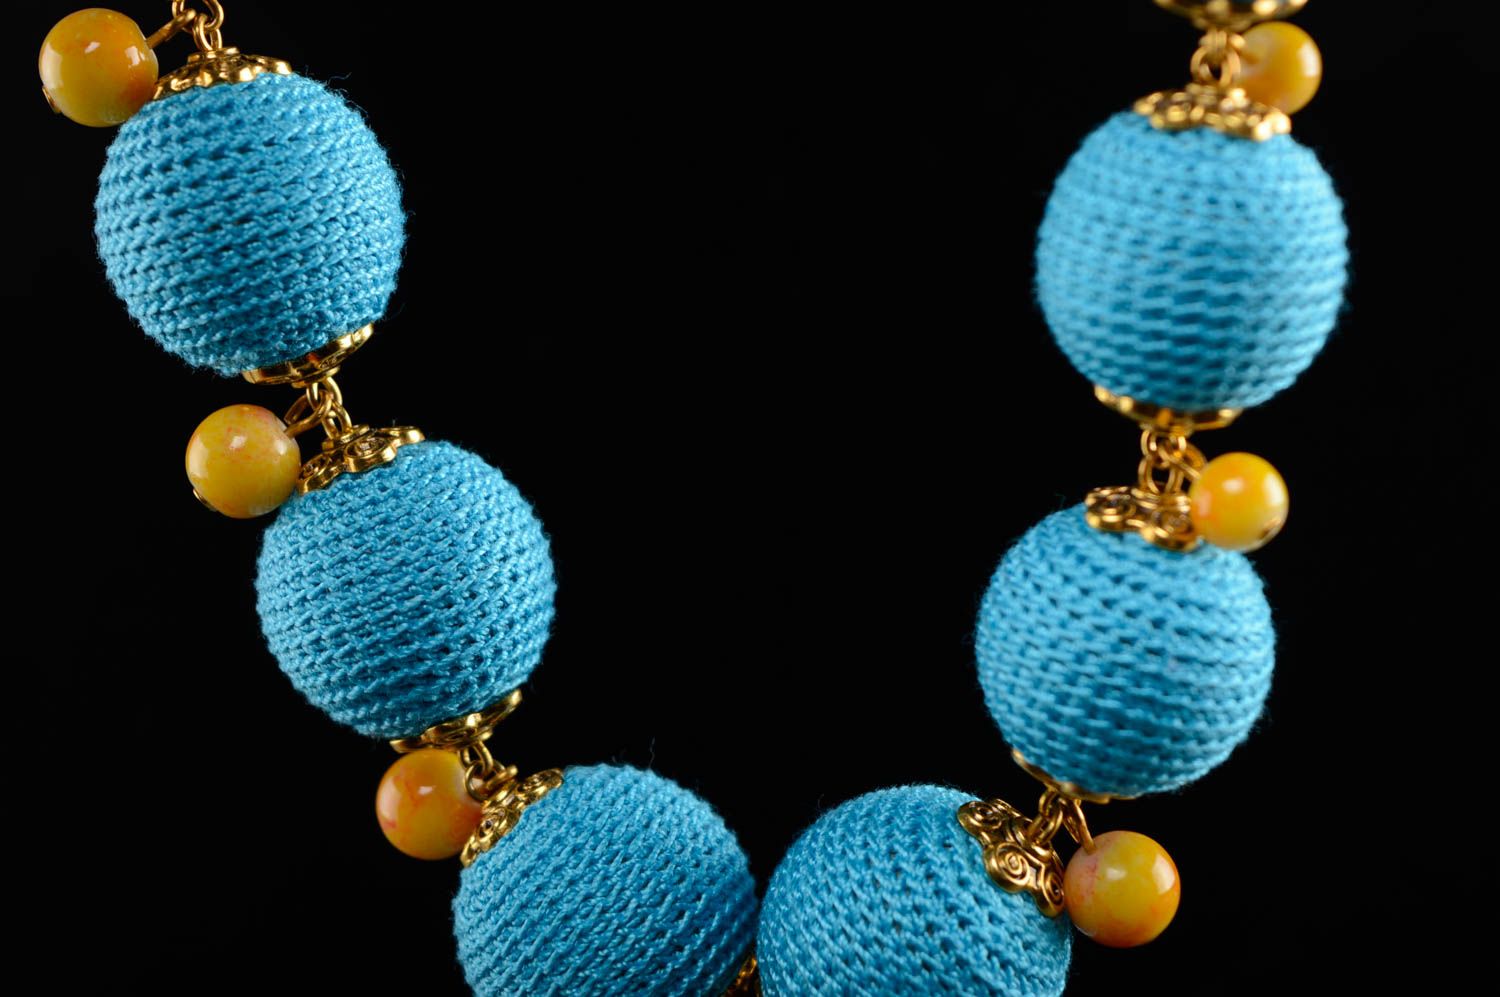 Textil Halskette mit Kugeln Blaue Lagune foto 3